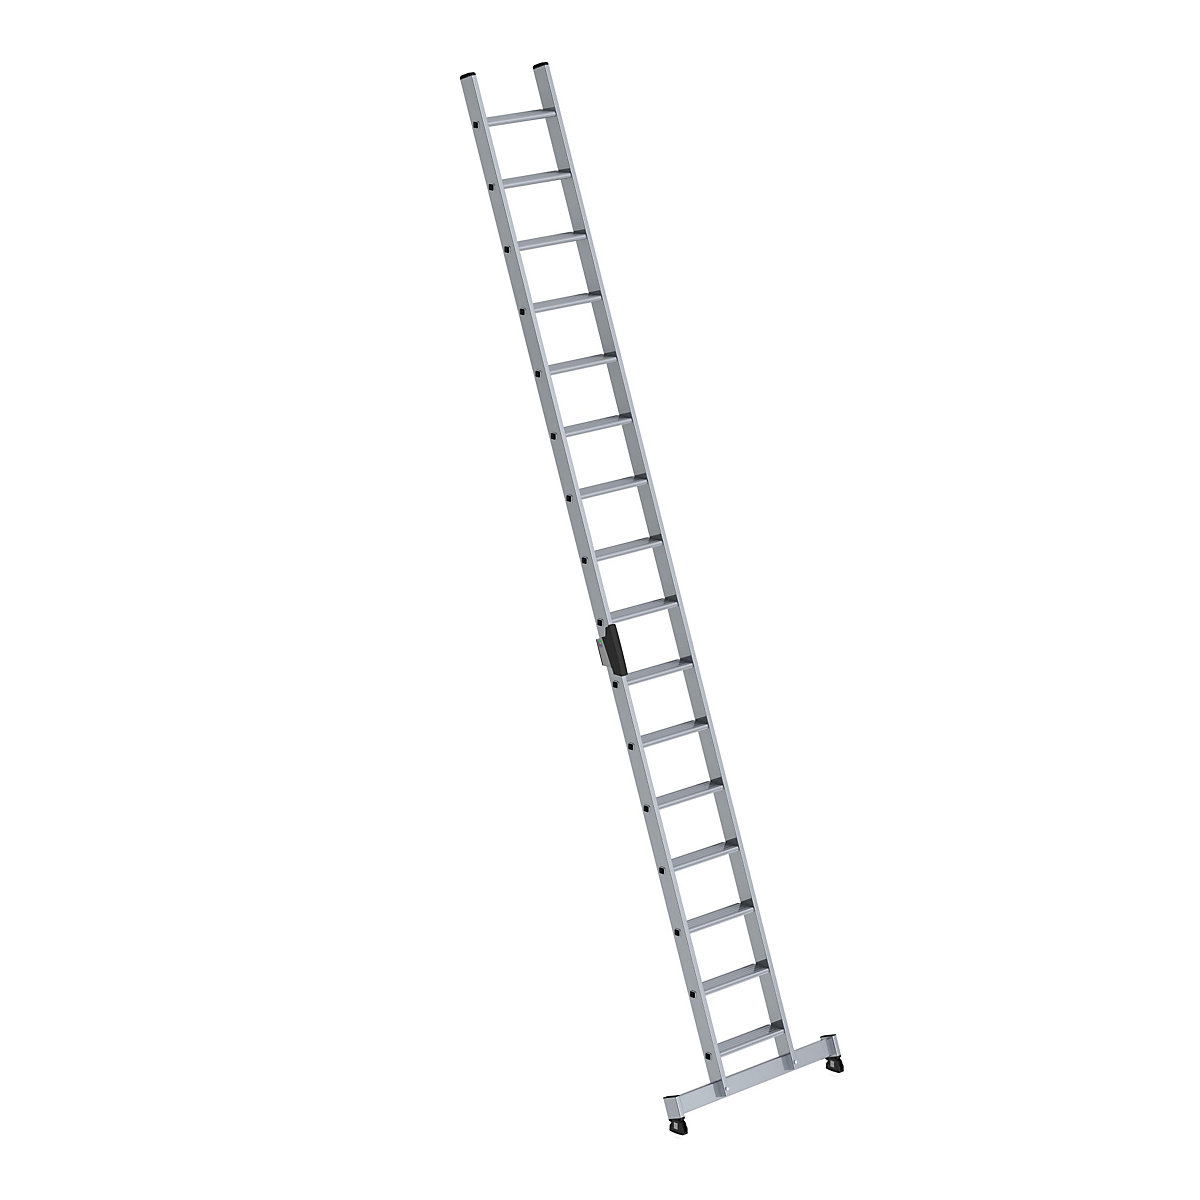 Prislonska lestev s stopnicami – MUNK, profesionalna izvedba, širina 420 mm, 16 stopnic, s prečko nivello®-8